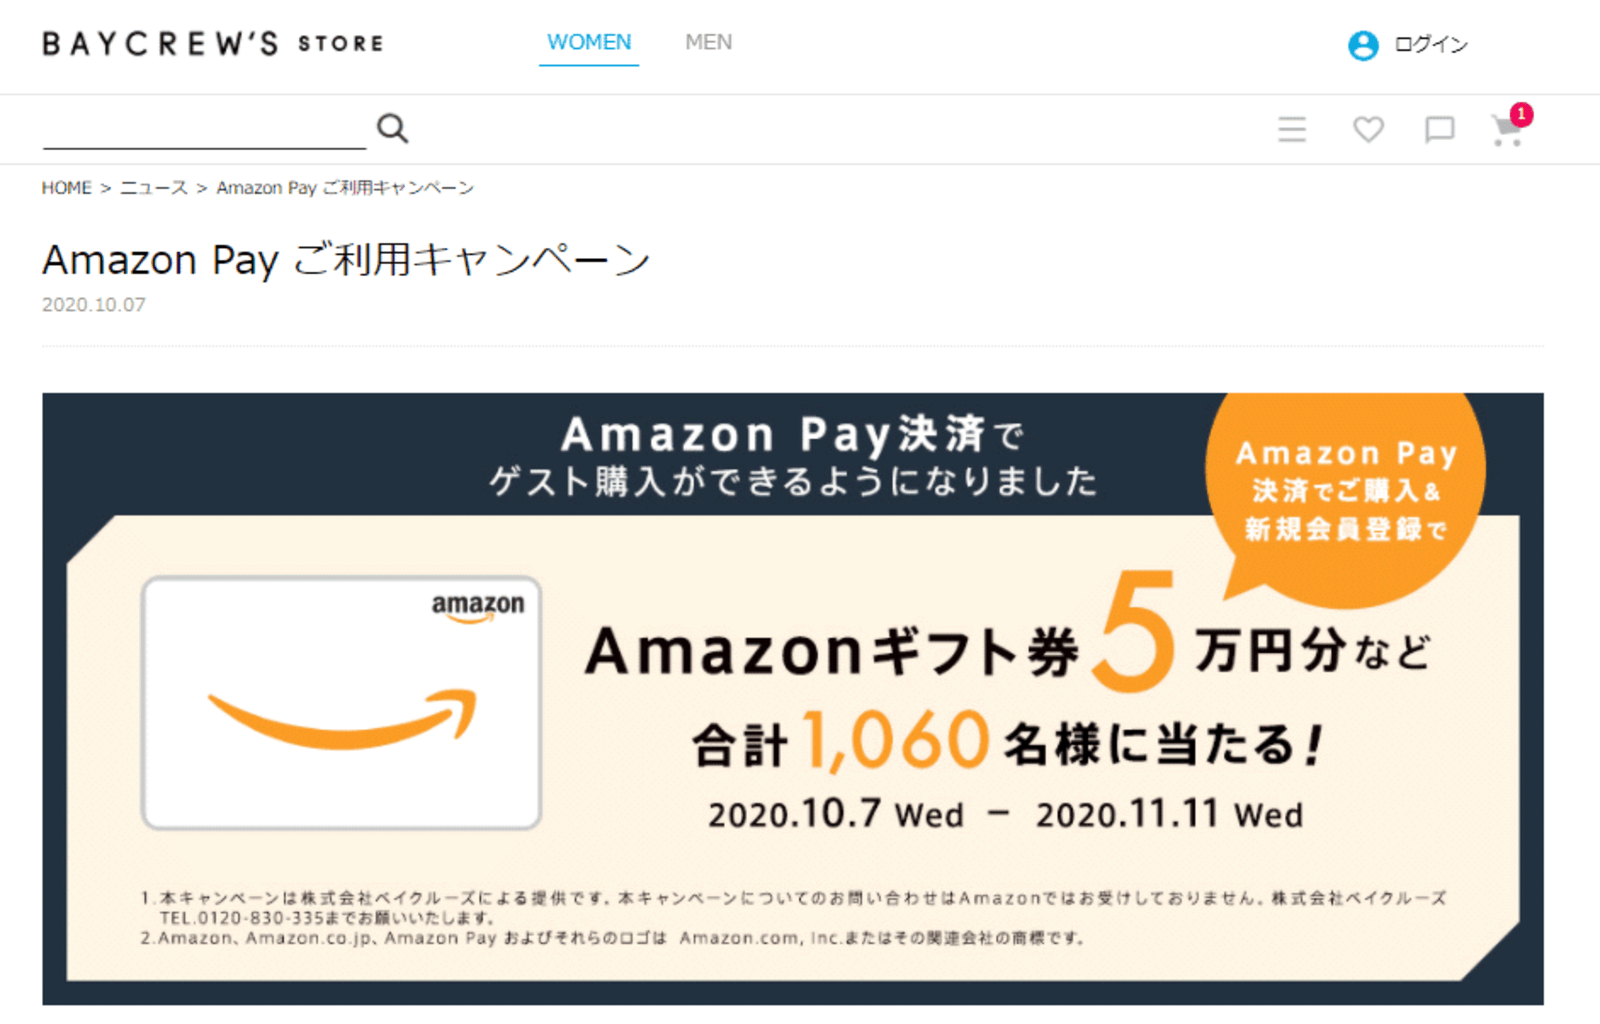 ベイクルーズがアマゾンのid決済 Amazon Pay 導入 ゲスト購入限定で提供 ネットショップ担当者フォーラム